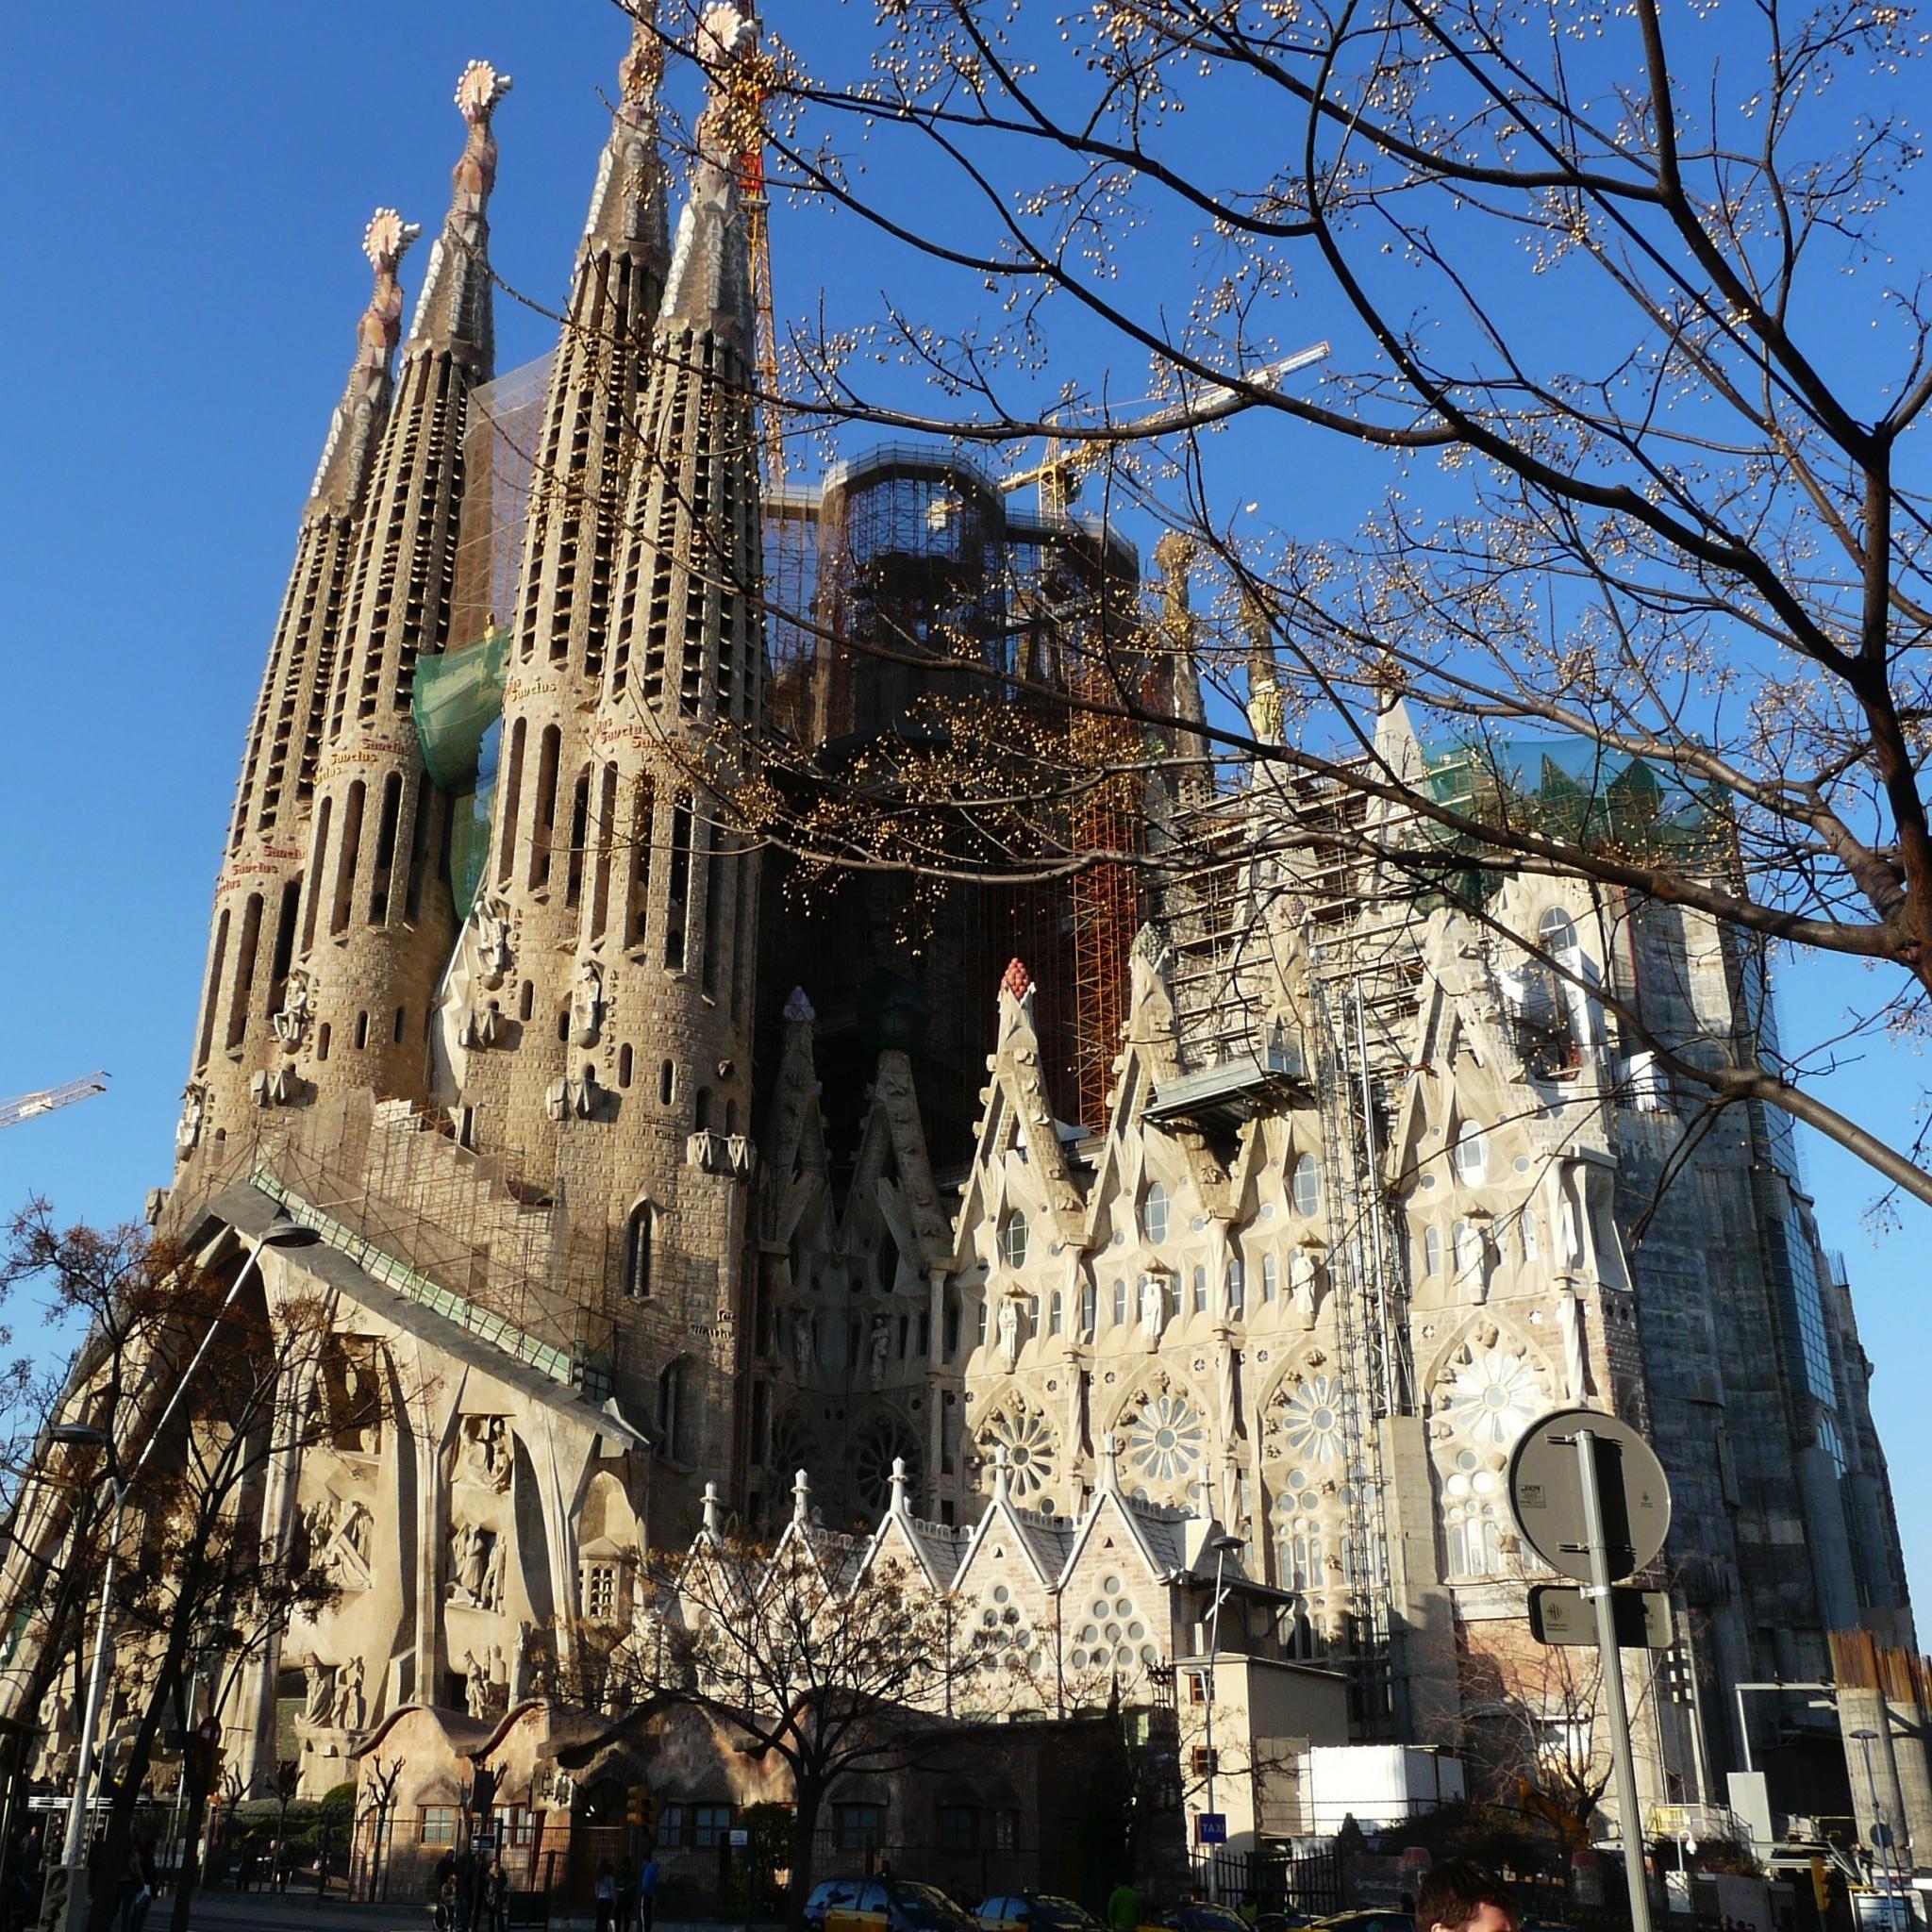 La Sagrada Familia IPad Air Pro Wallpaper And IPad Mini Wallpaper